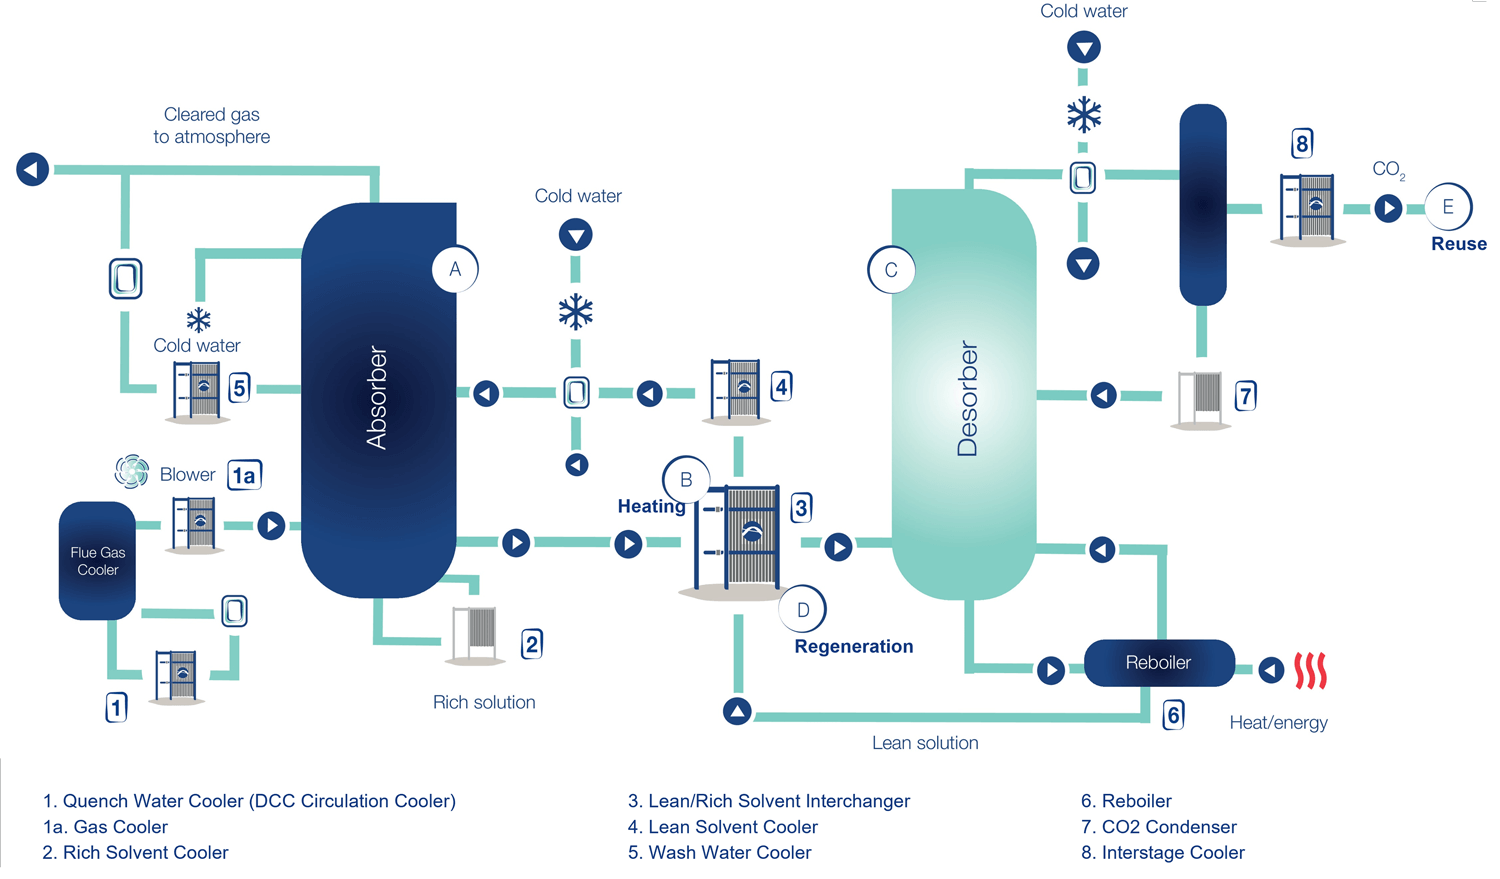 schéma thermique d'usine CCU de carbon capture and storage